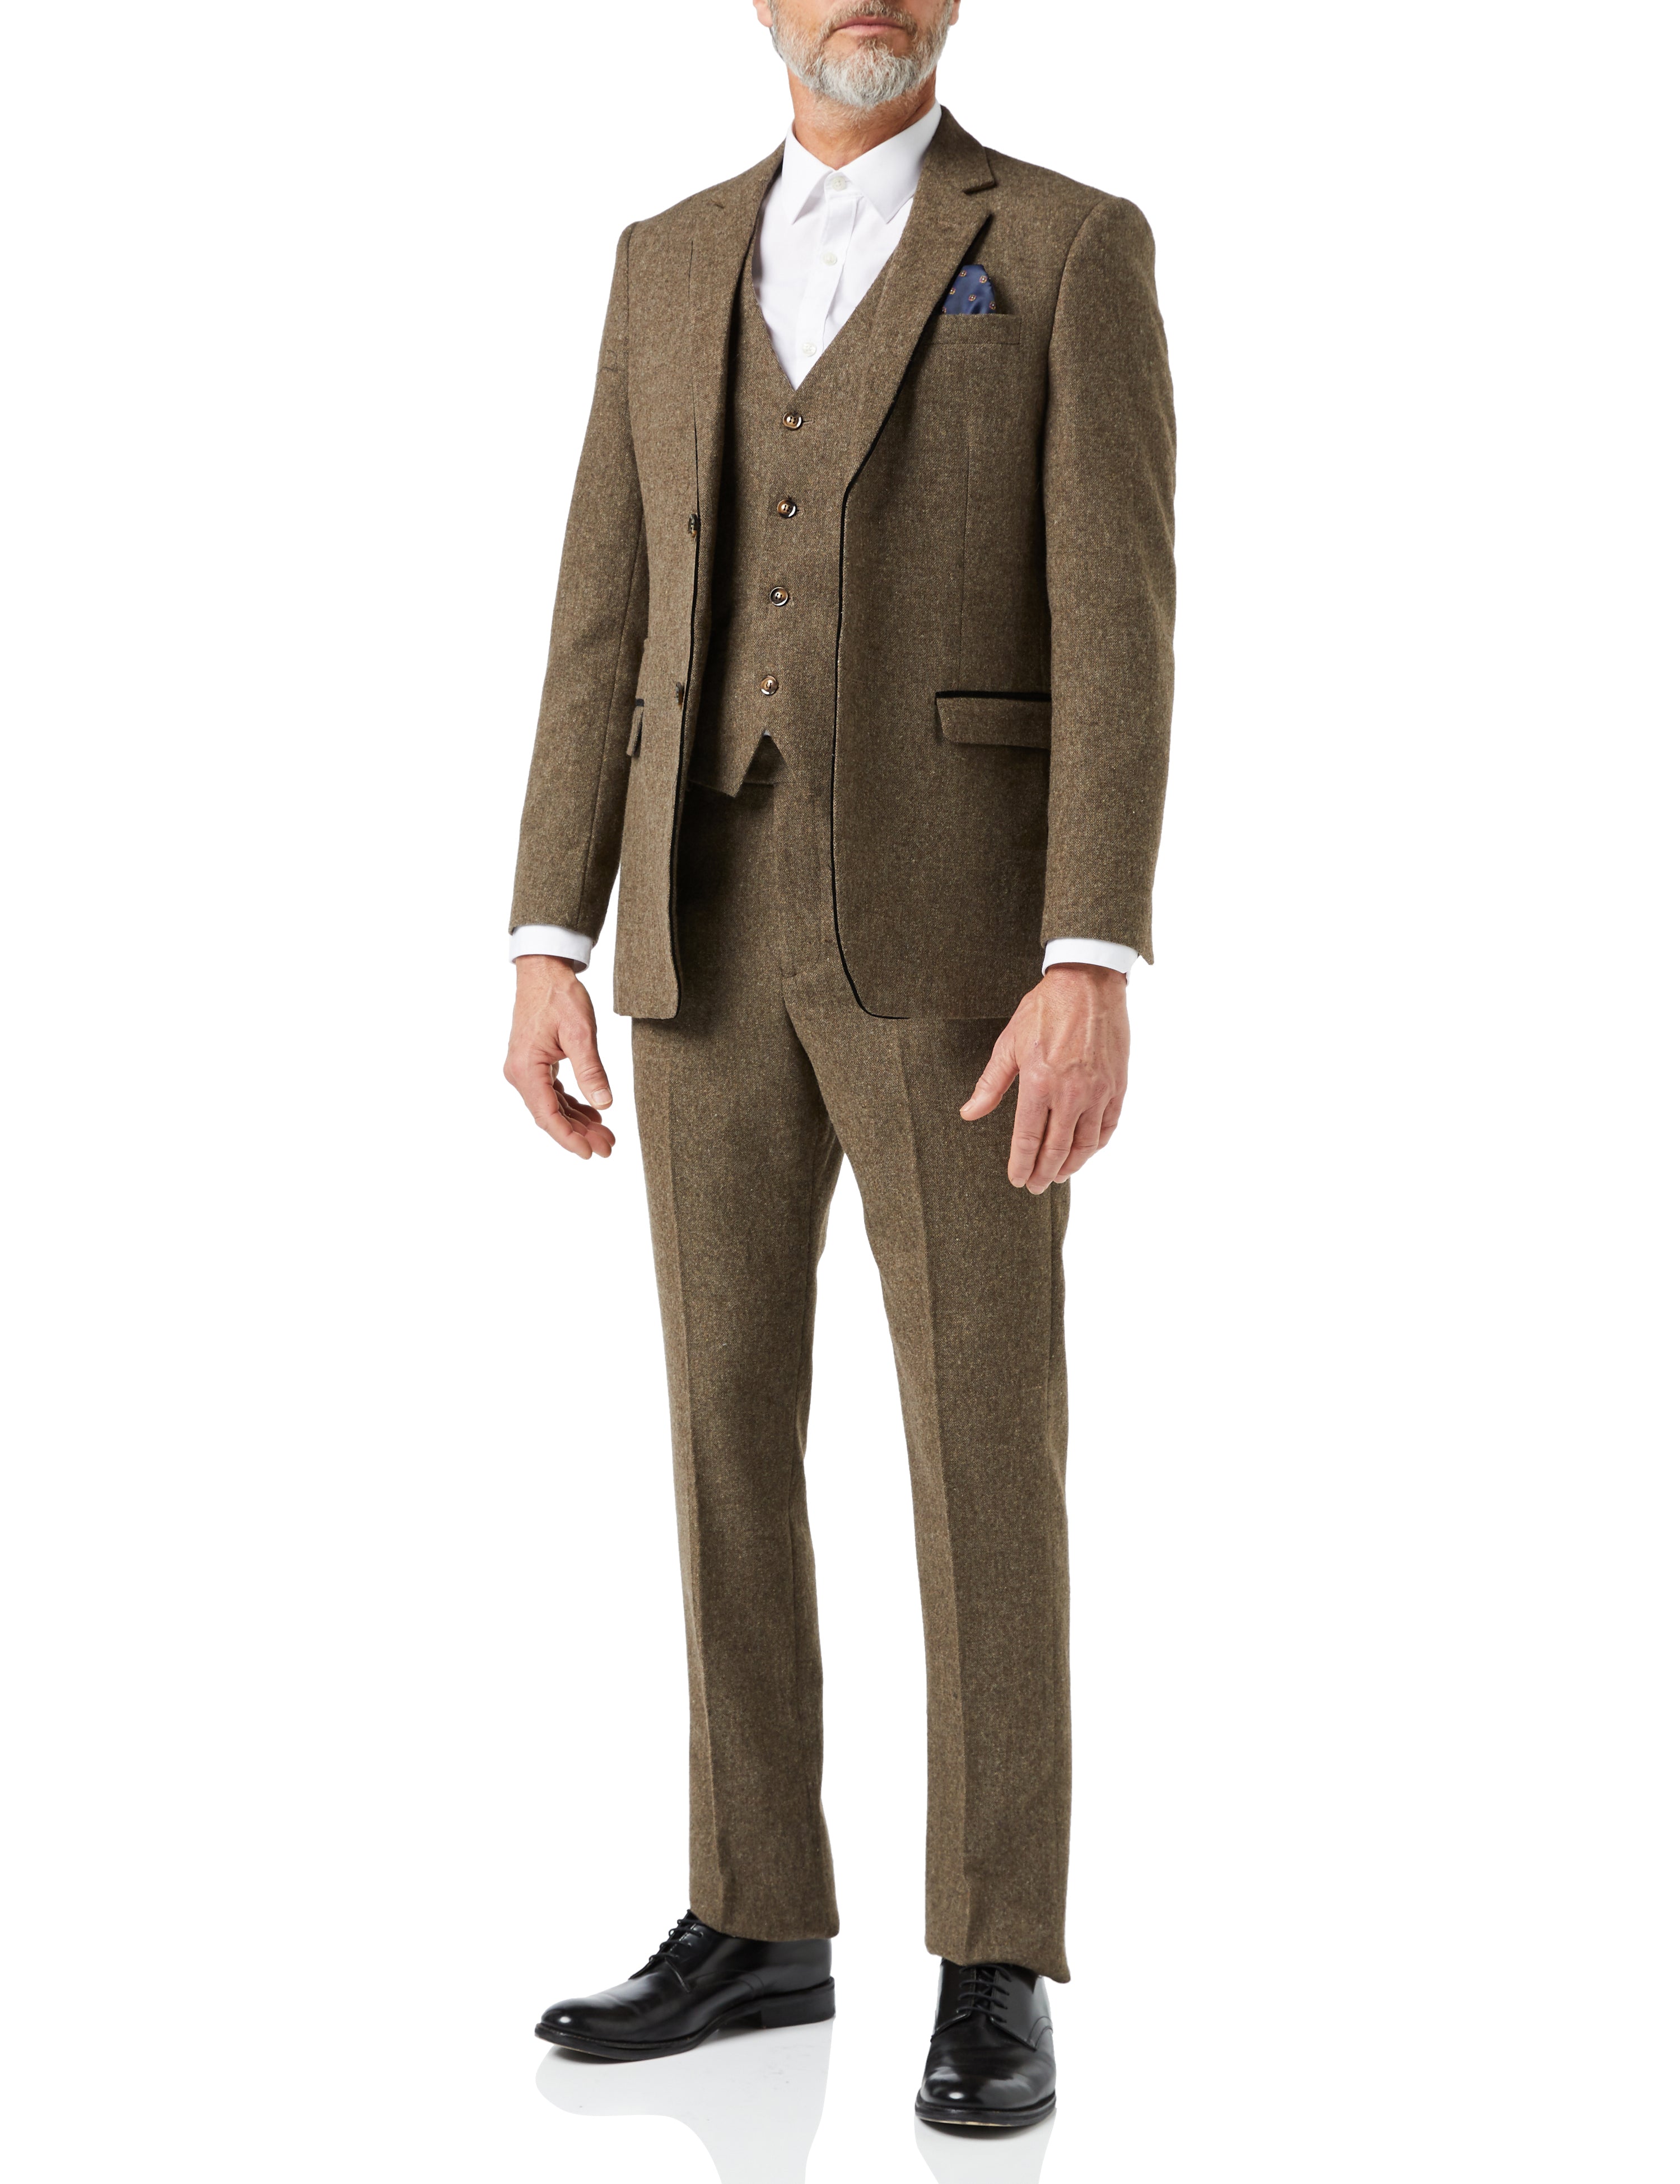 Mens Vintage Tan Tweed Herringbone 3 Piece Suit Retro Peaky Blinders Slim Fit